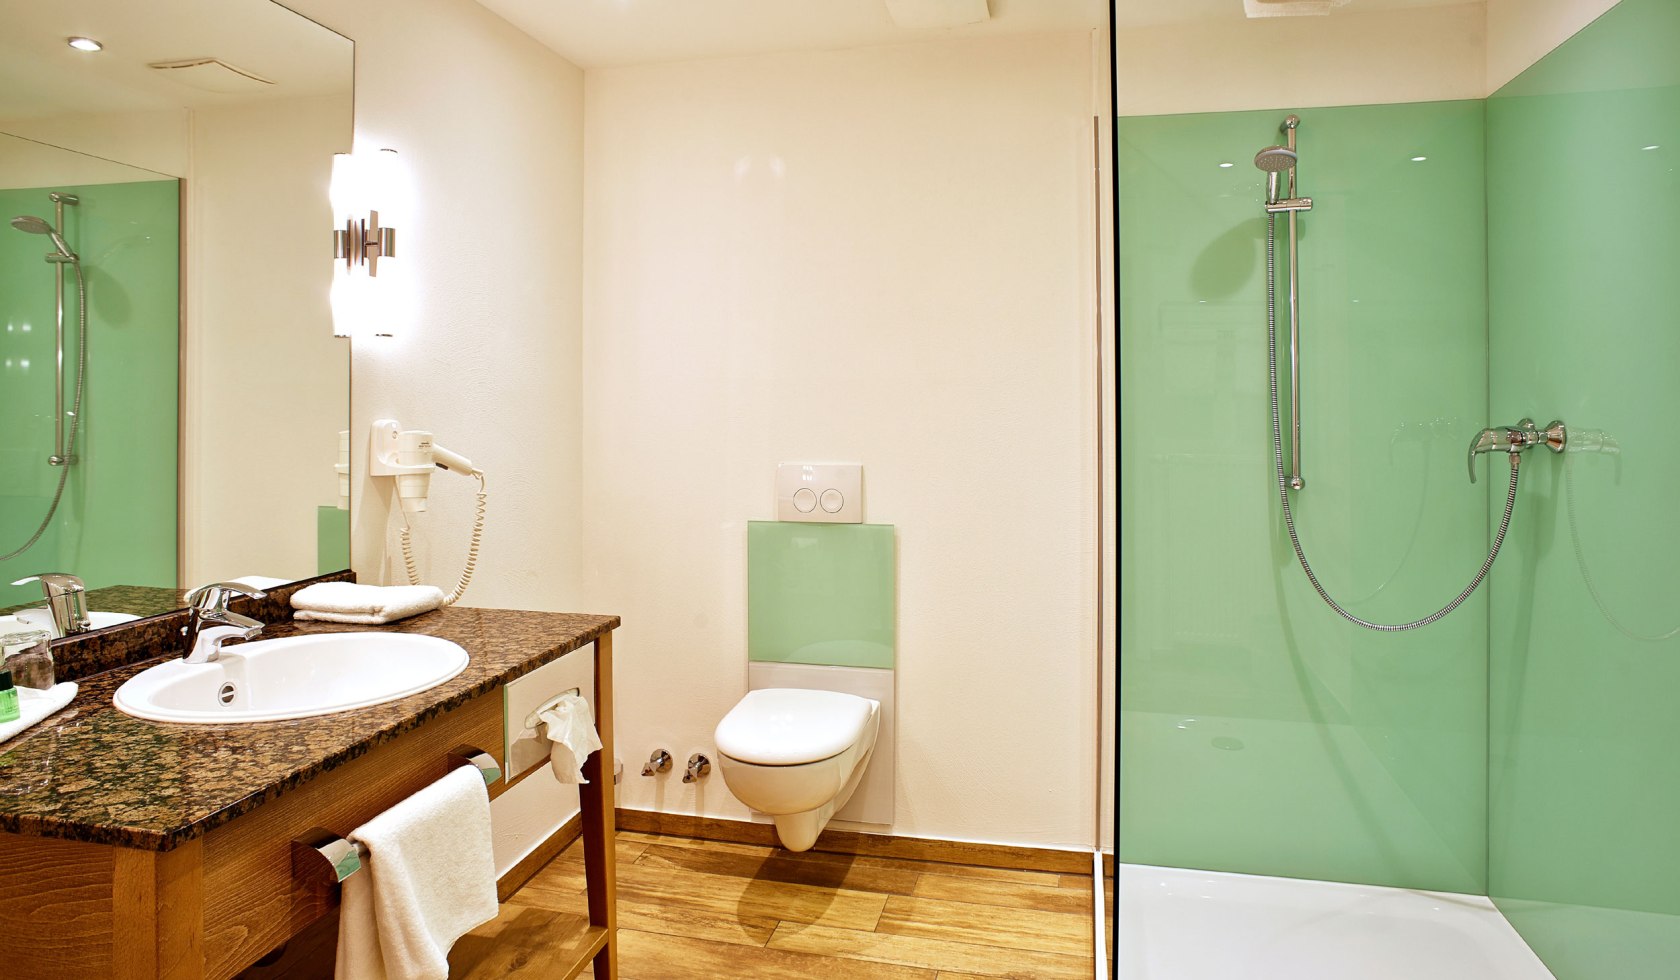 Modernes Badezimmer mit grünen Elementen im Mühl Vital Resort, © MH Hotelbetriebsgesellschaft mbH